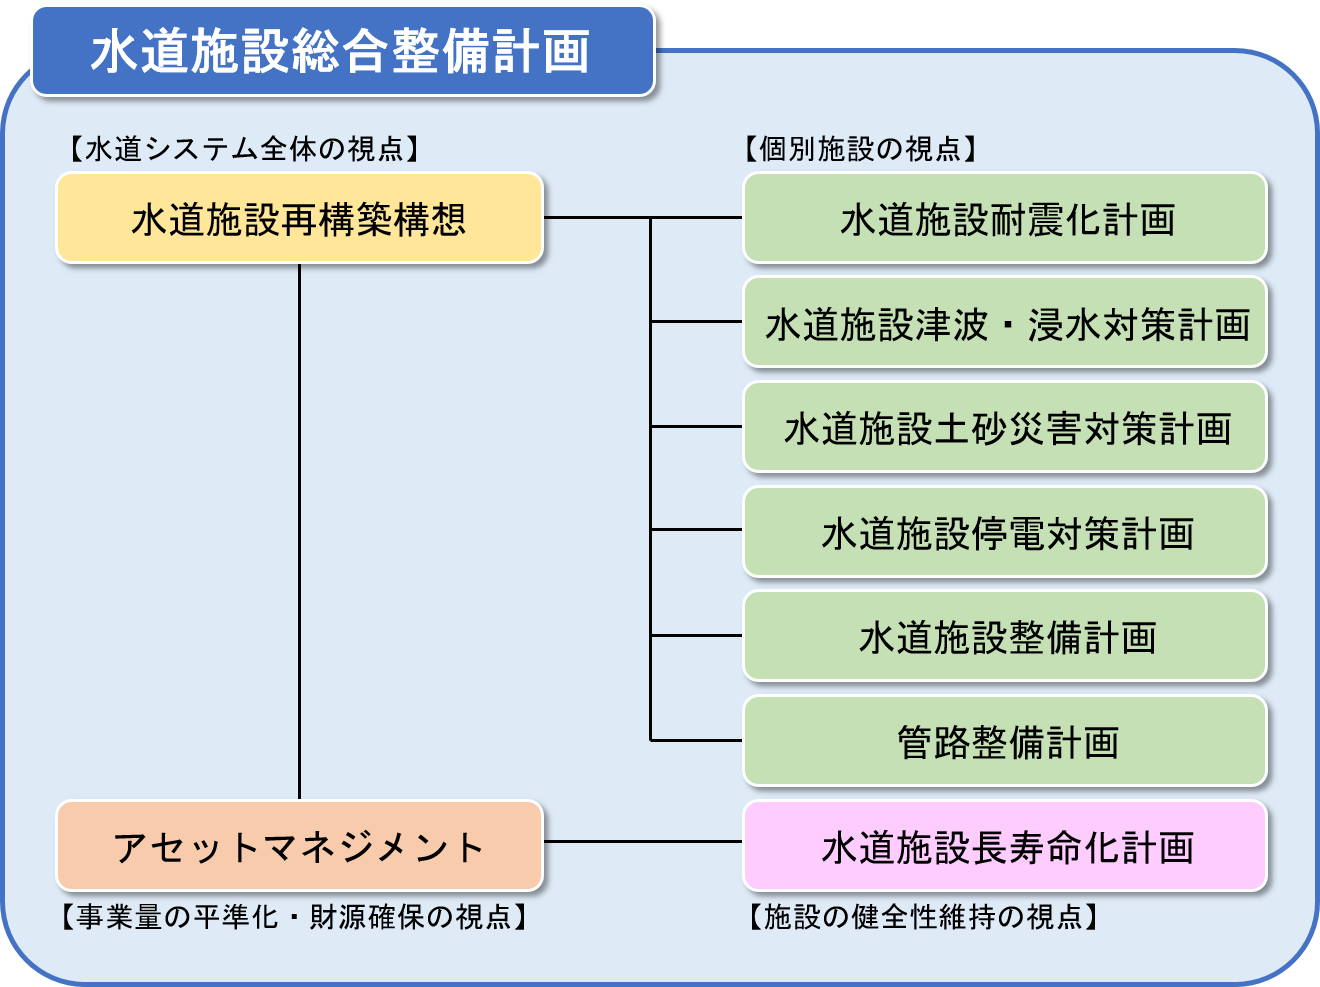 水道施設総合整備計画の体系図